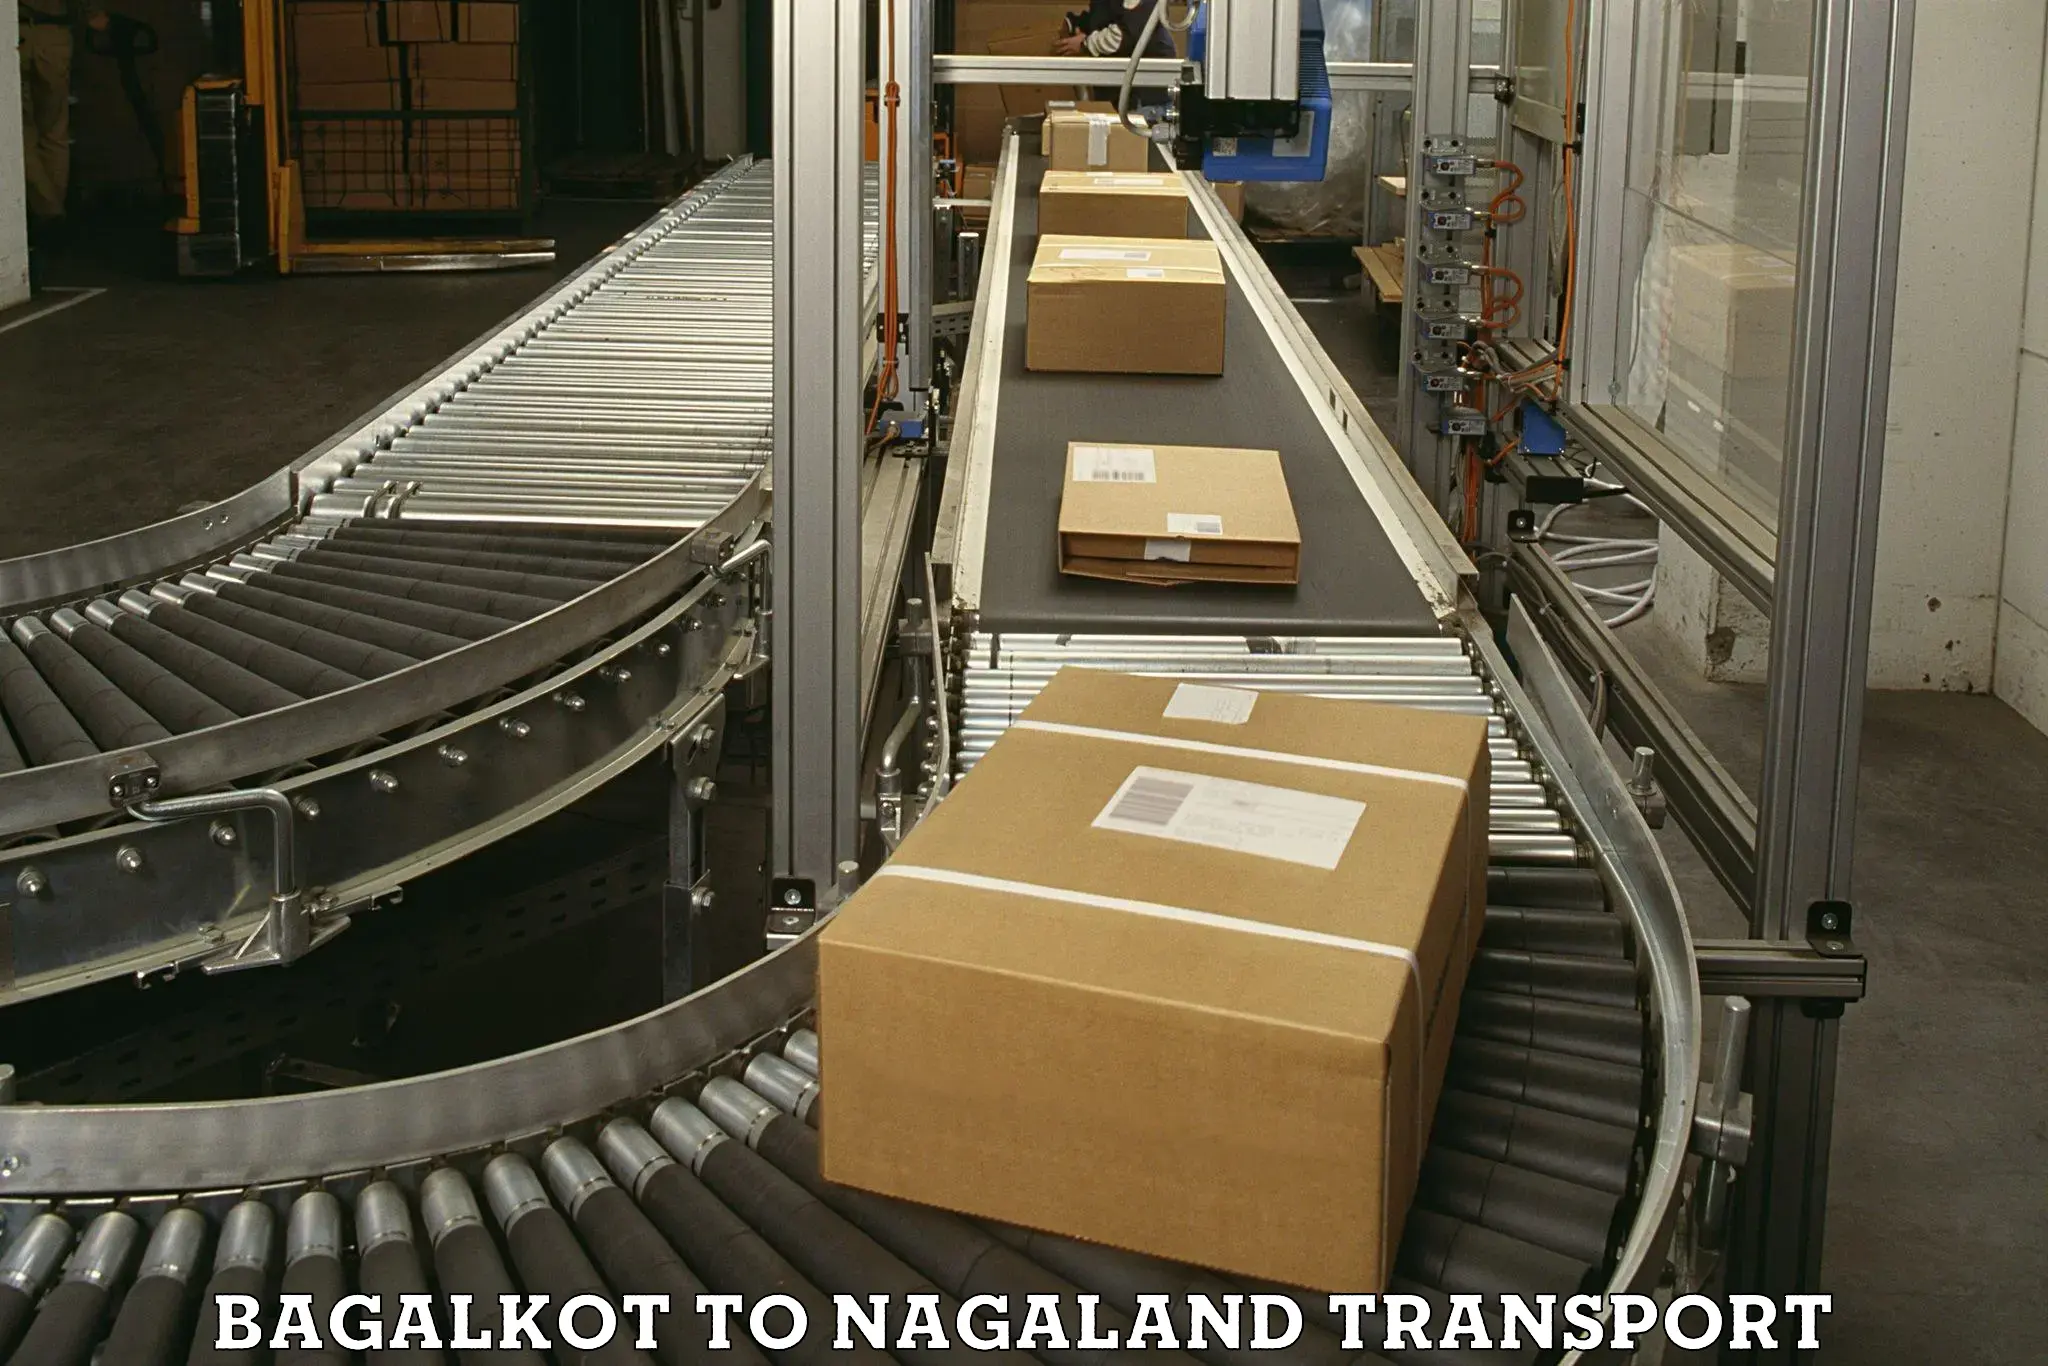 Online transport service Bagalkot to Longleng